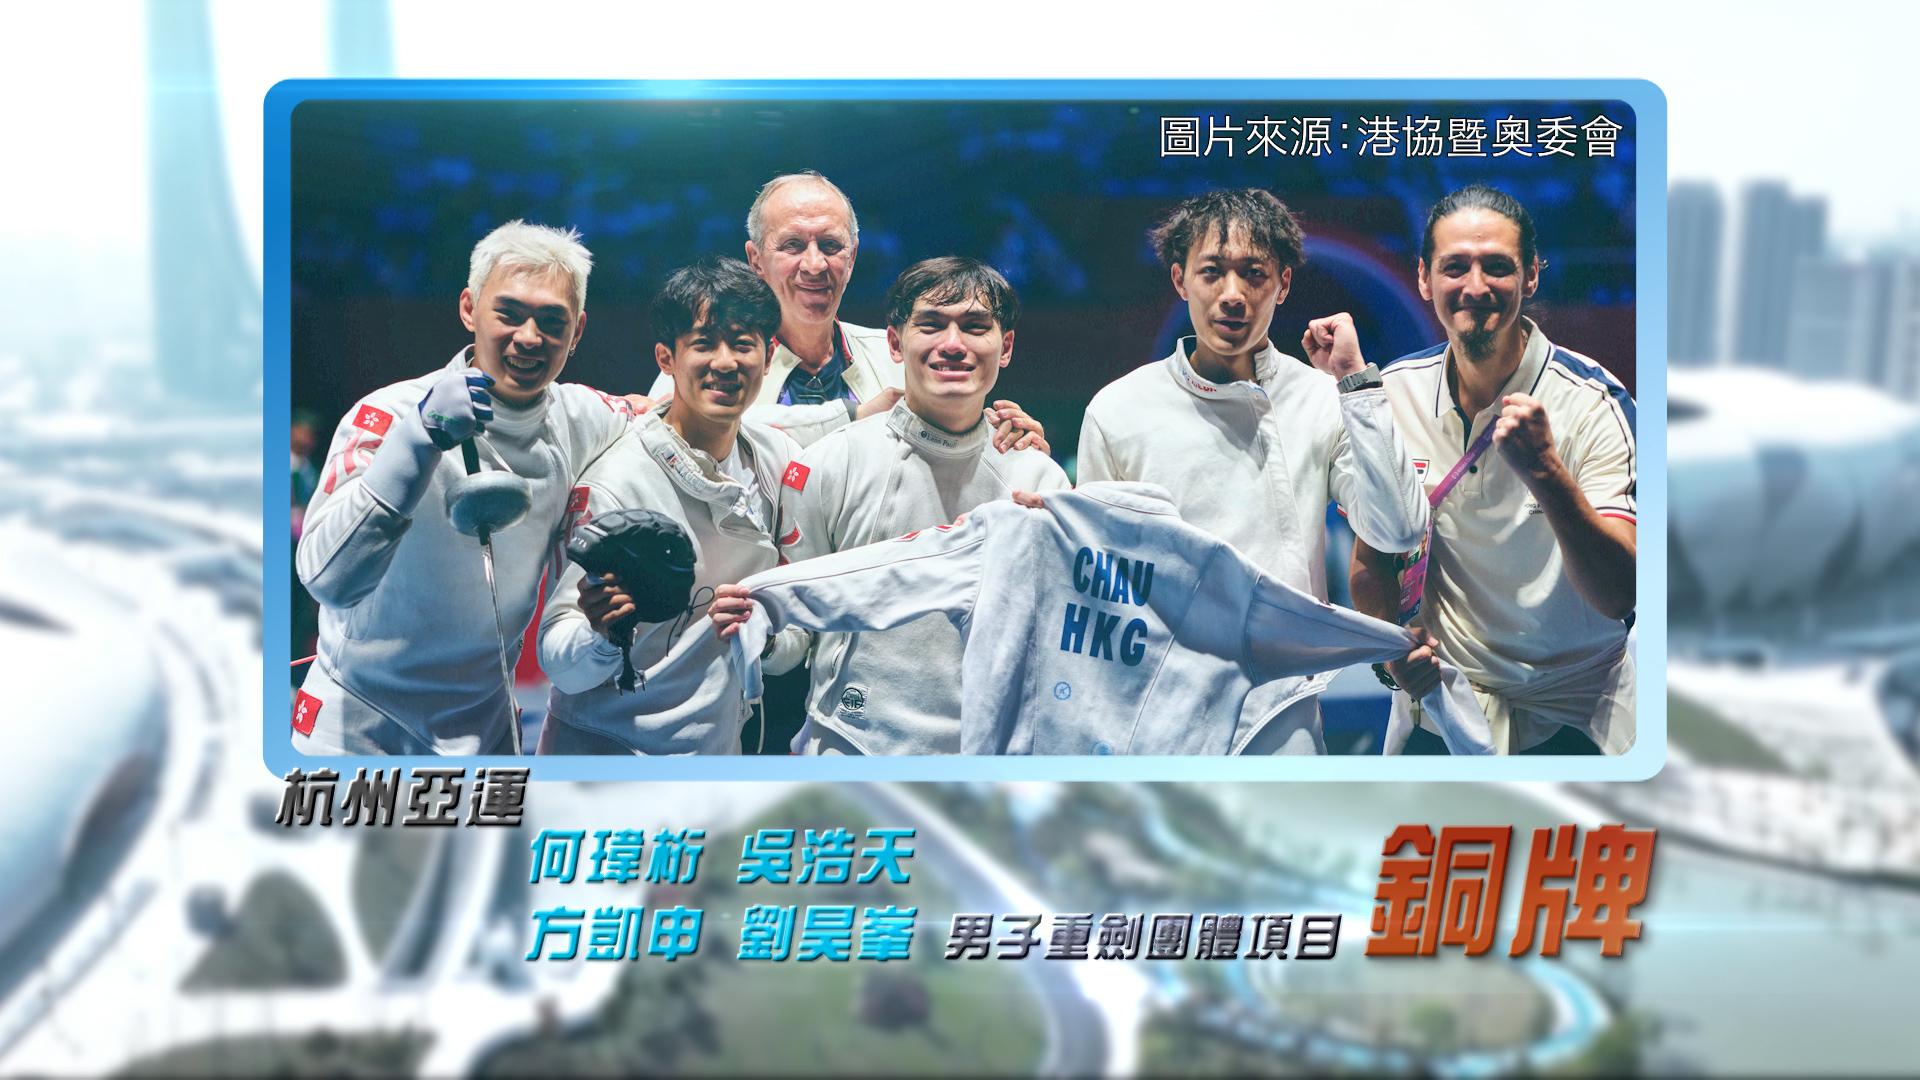 恭喜何瑋桁、吳浩天、方凱申、劉昊峯於杭州亞運男子重劍團體賽奪銅！